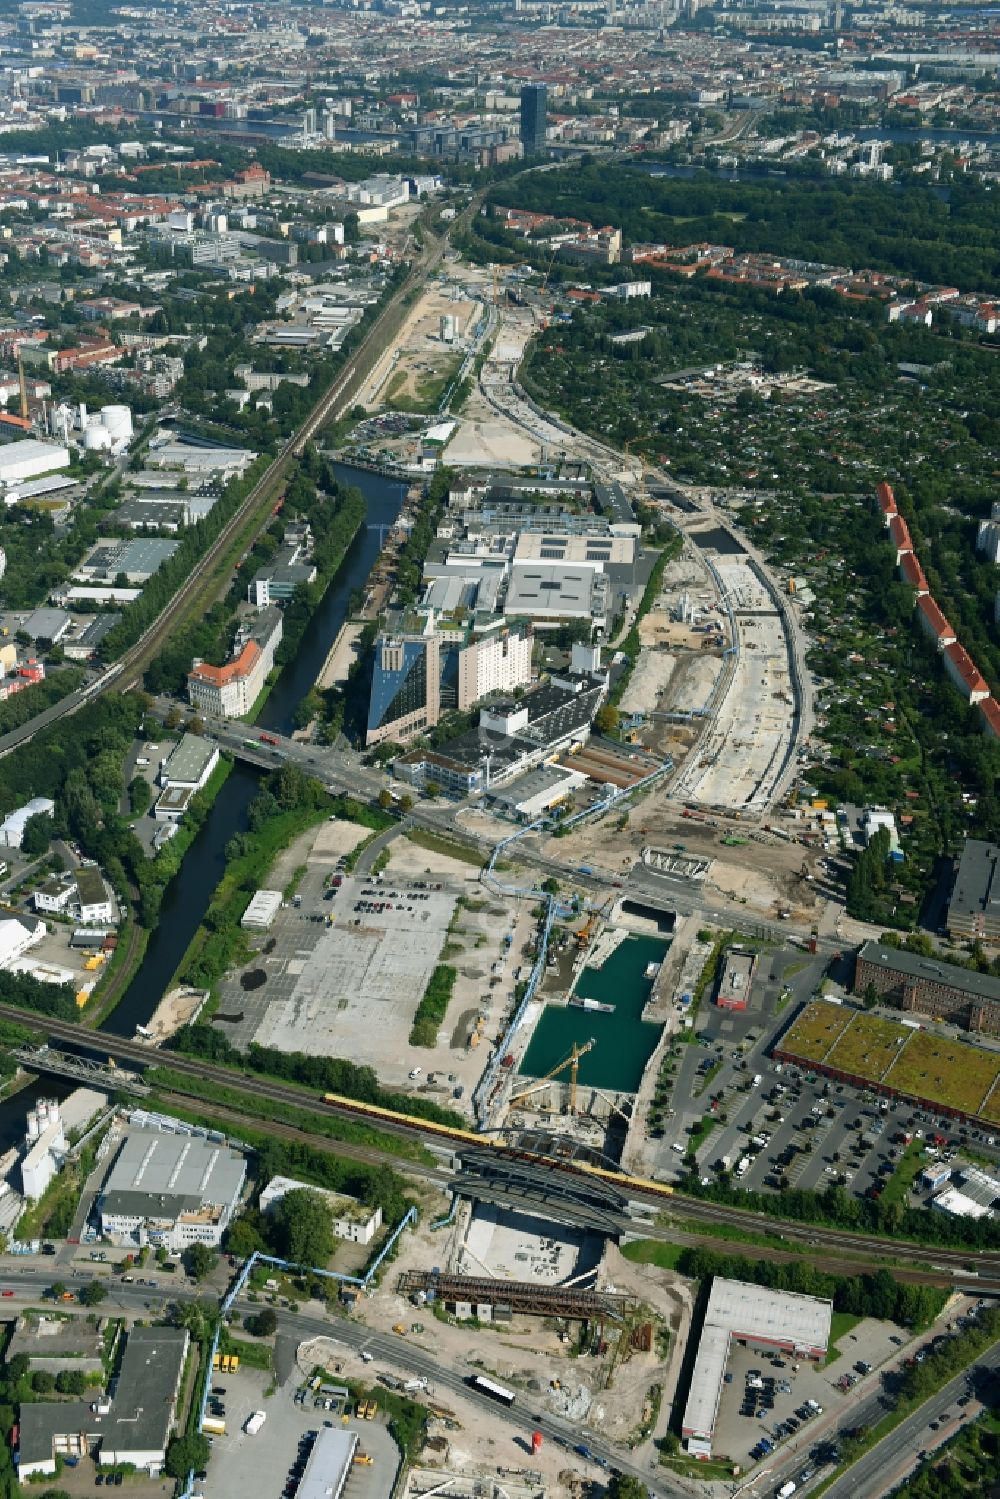 Berlin aus der Vogelperspektive: Baustellen zum Neubau der Verlängerung der Stadtautobahn A100 in Berlin Neukölln